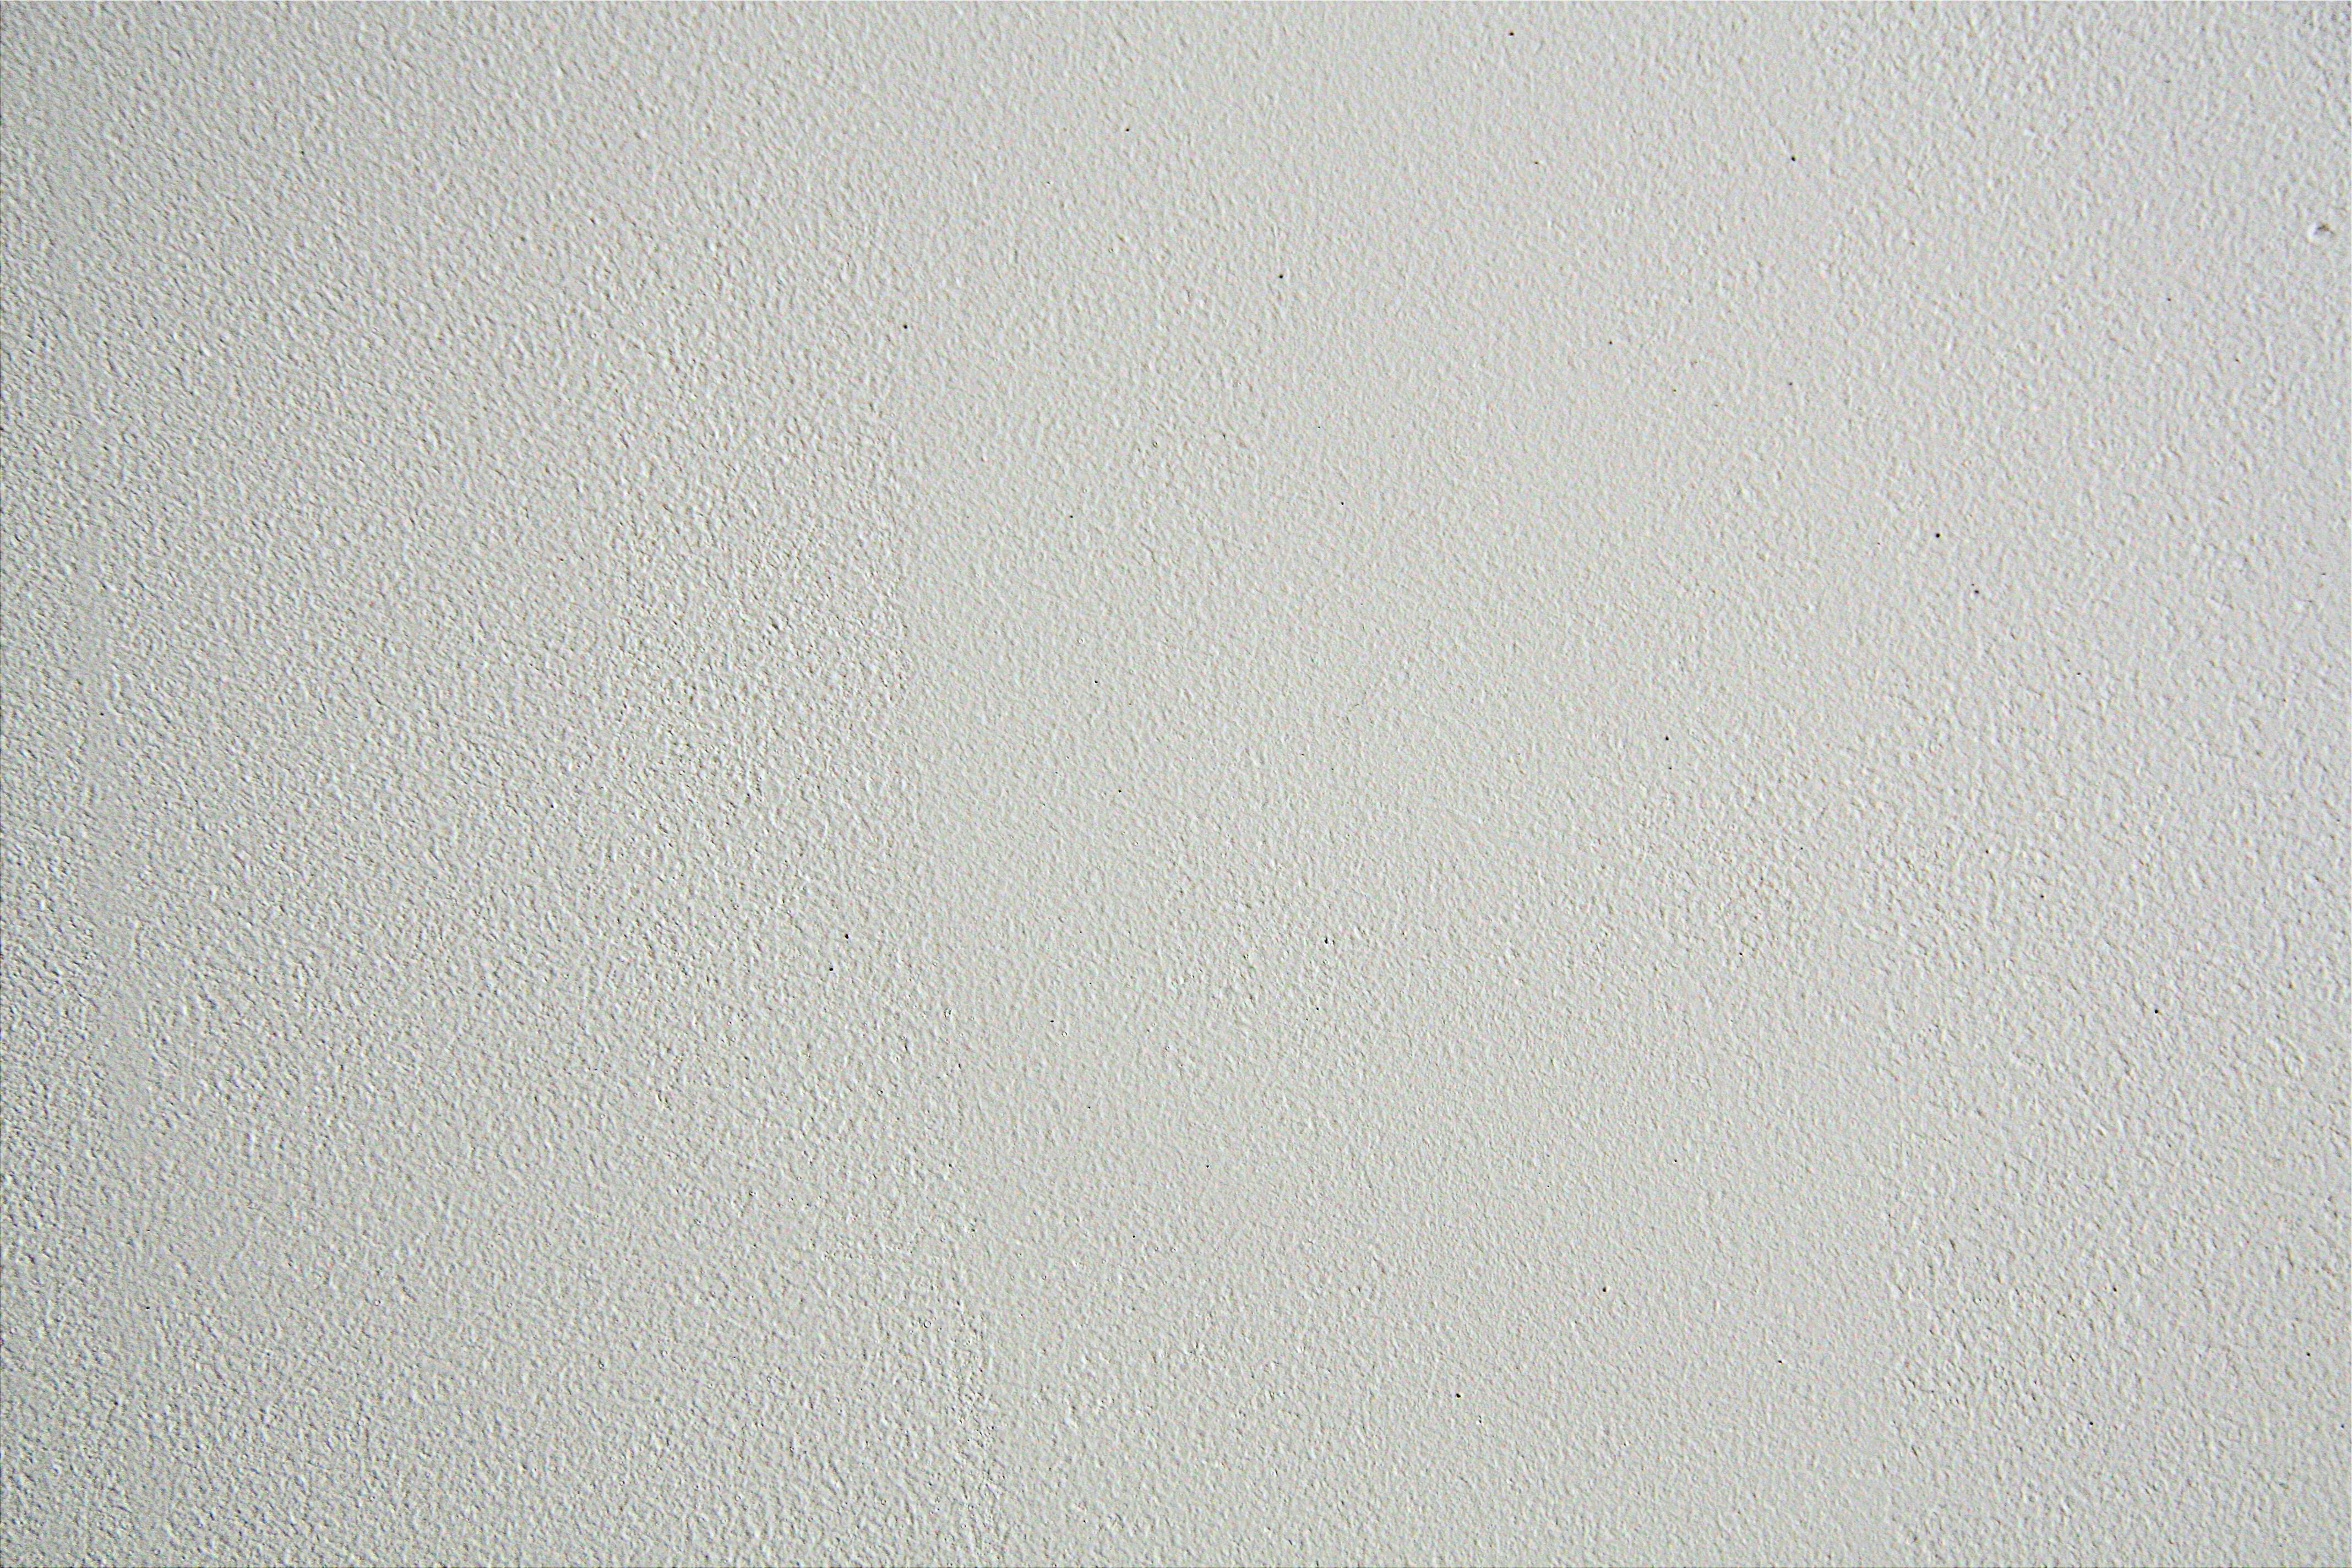 1000+ Beautiful White Wall Photos · Pexels · Free Stock Photos